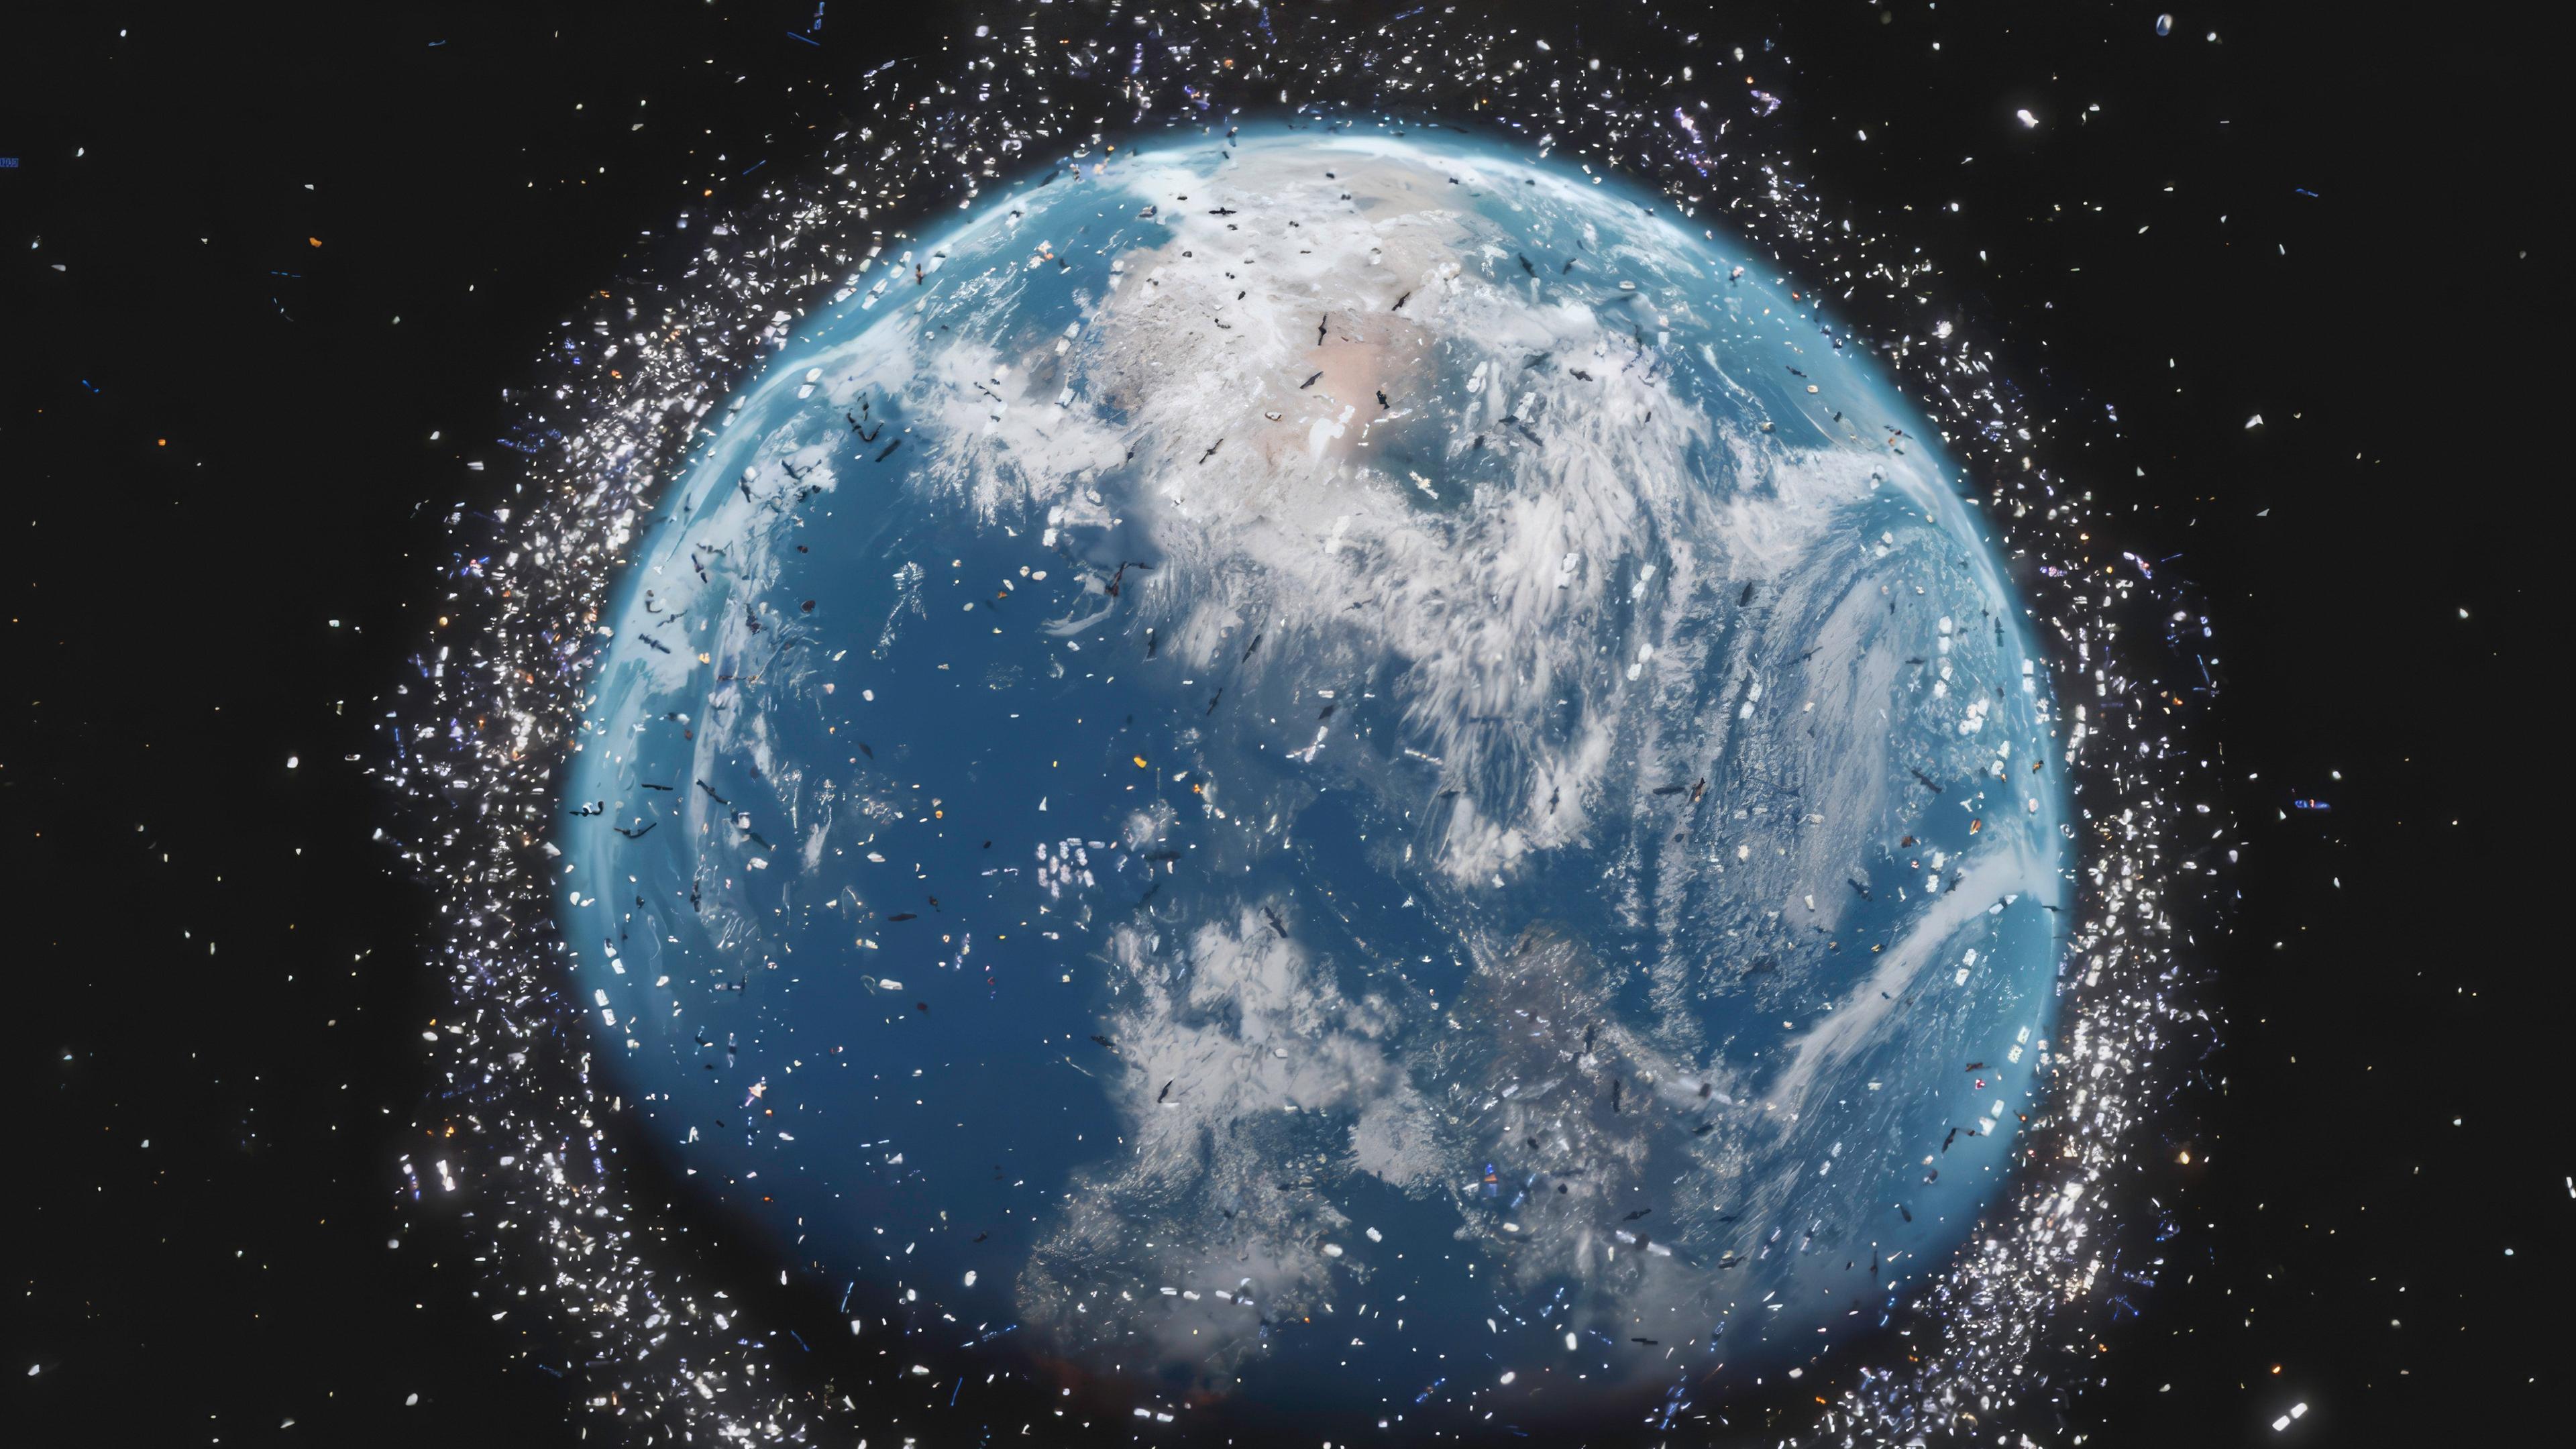 Eine Nahaufnahme der Erdkugel im Weltraum, umgeben von einem Kreis aus vielen kleinen hellen Punkten